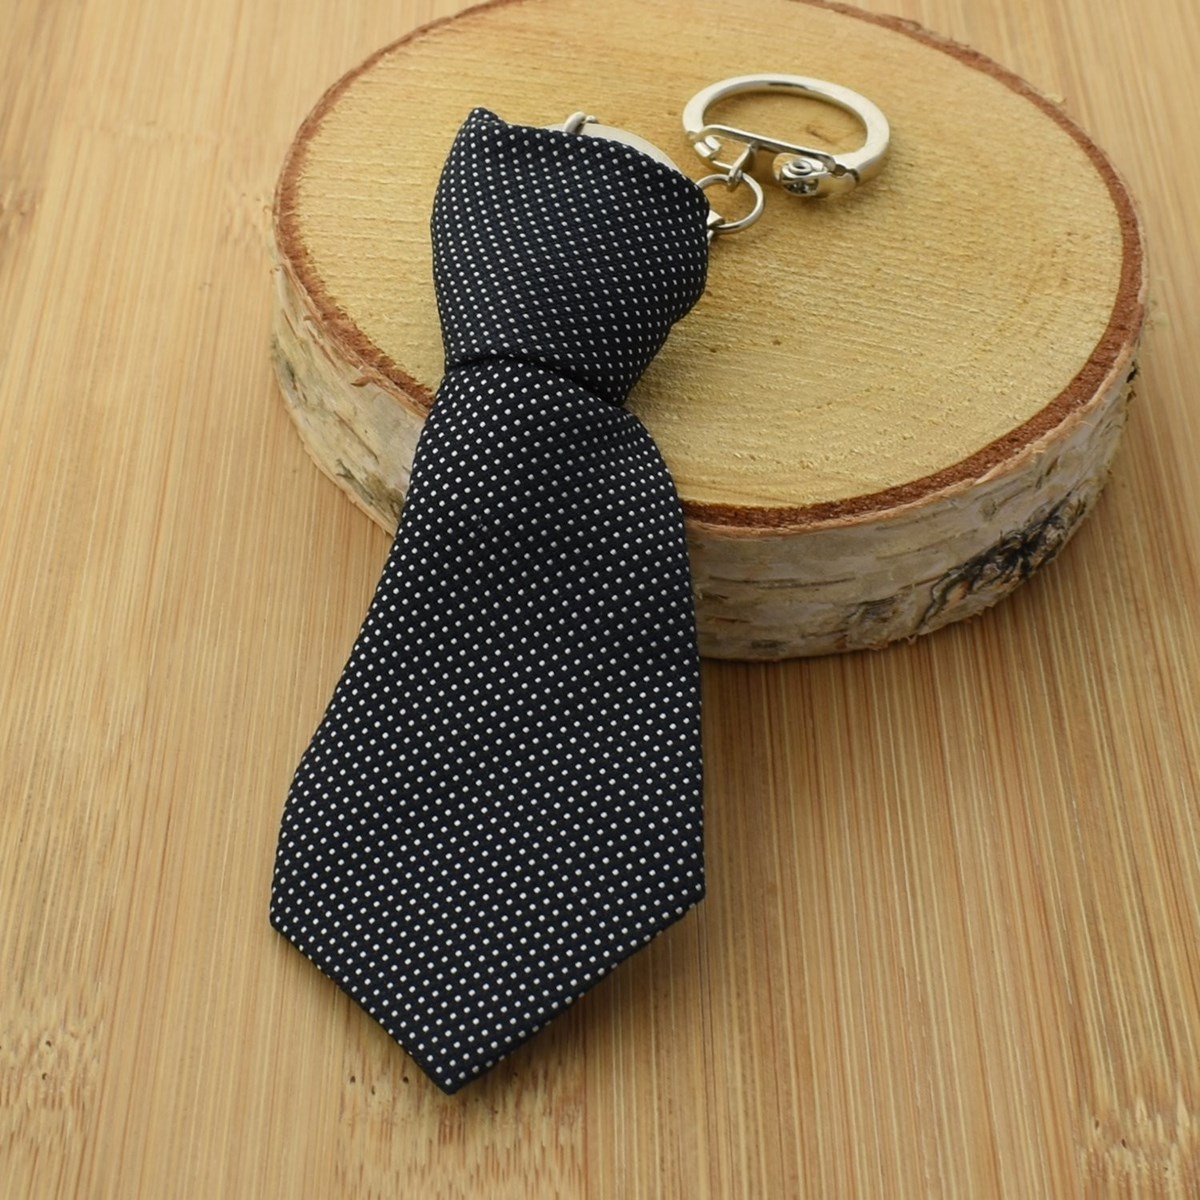 Porte-clés cravate en tissu moucheté pois blanc sur noir argenté - vue 4